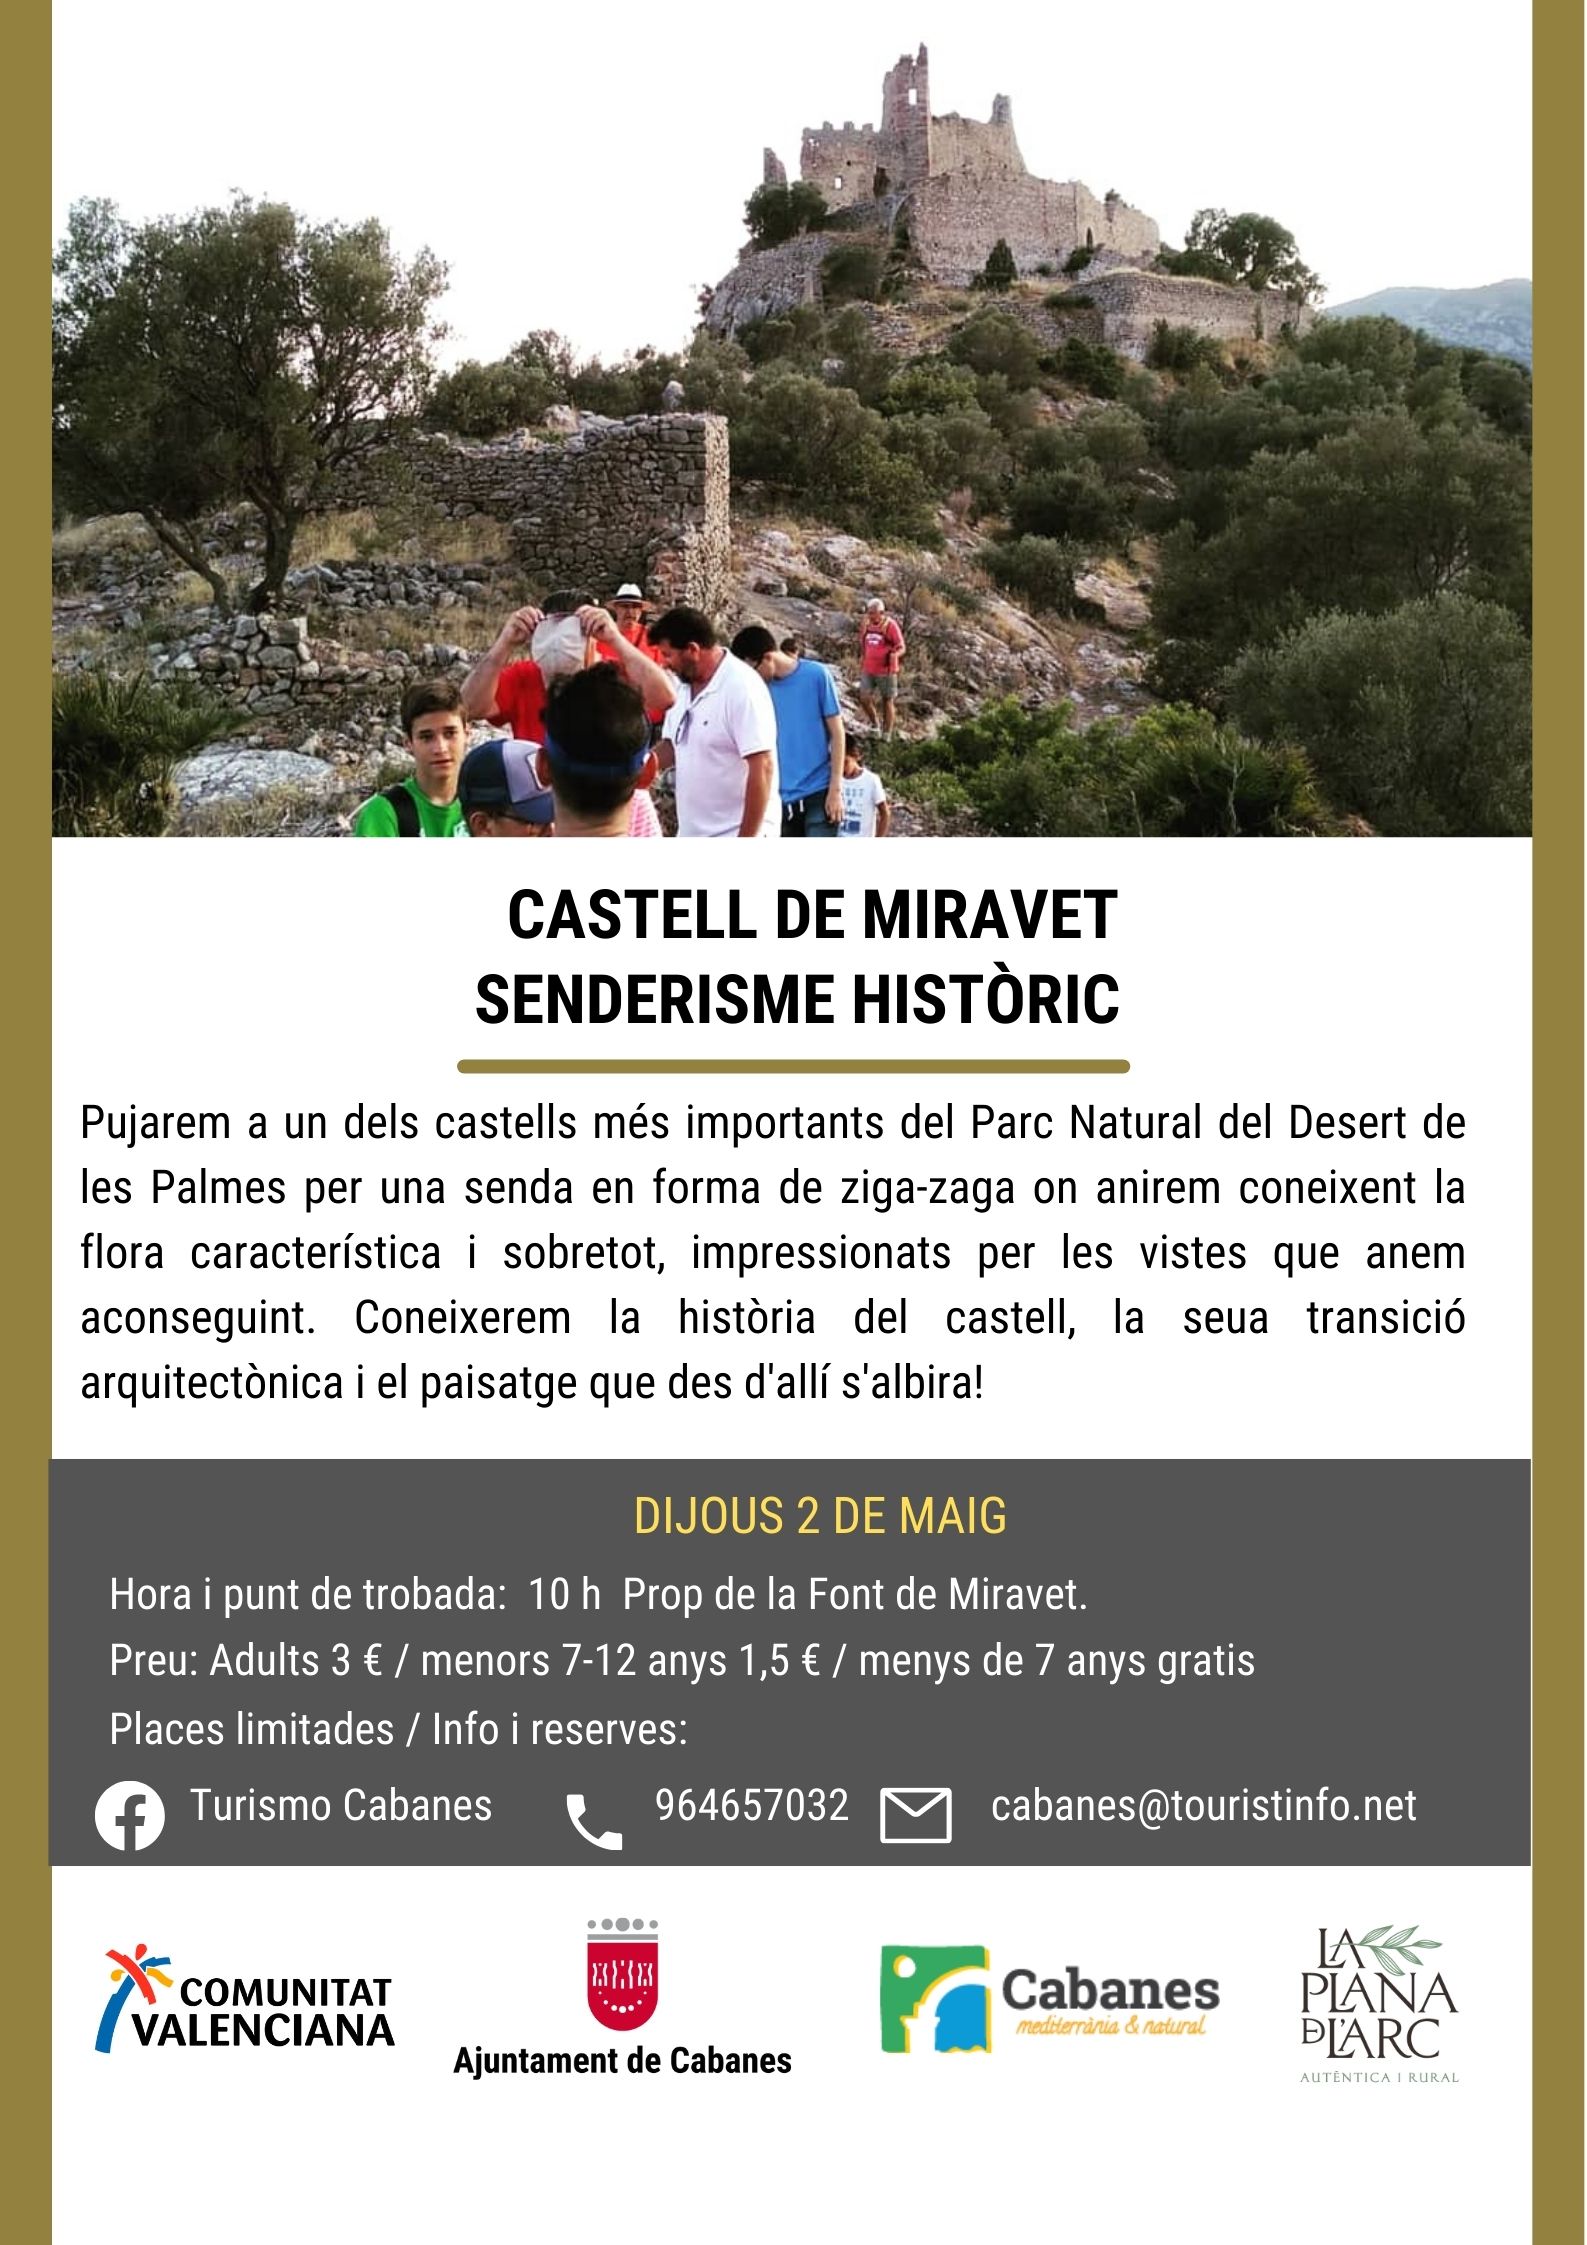 Senderisme: Castell de Miravet